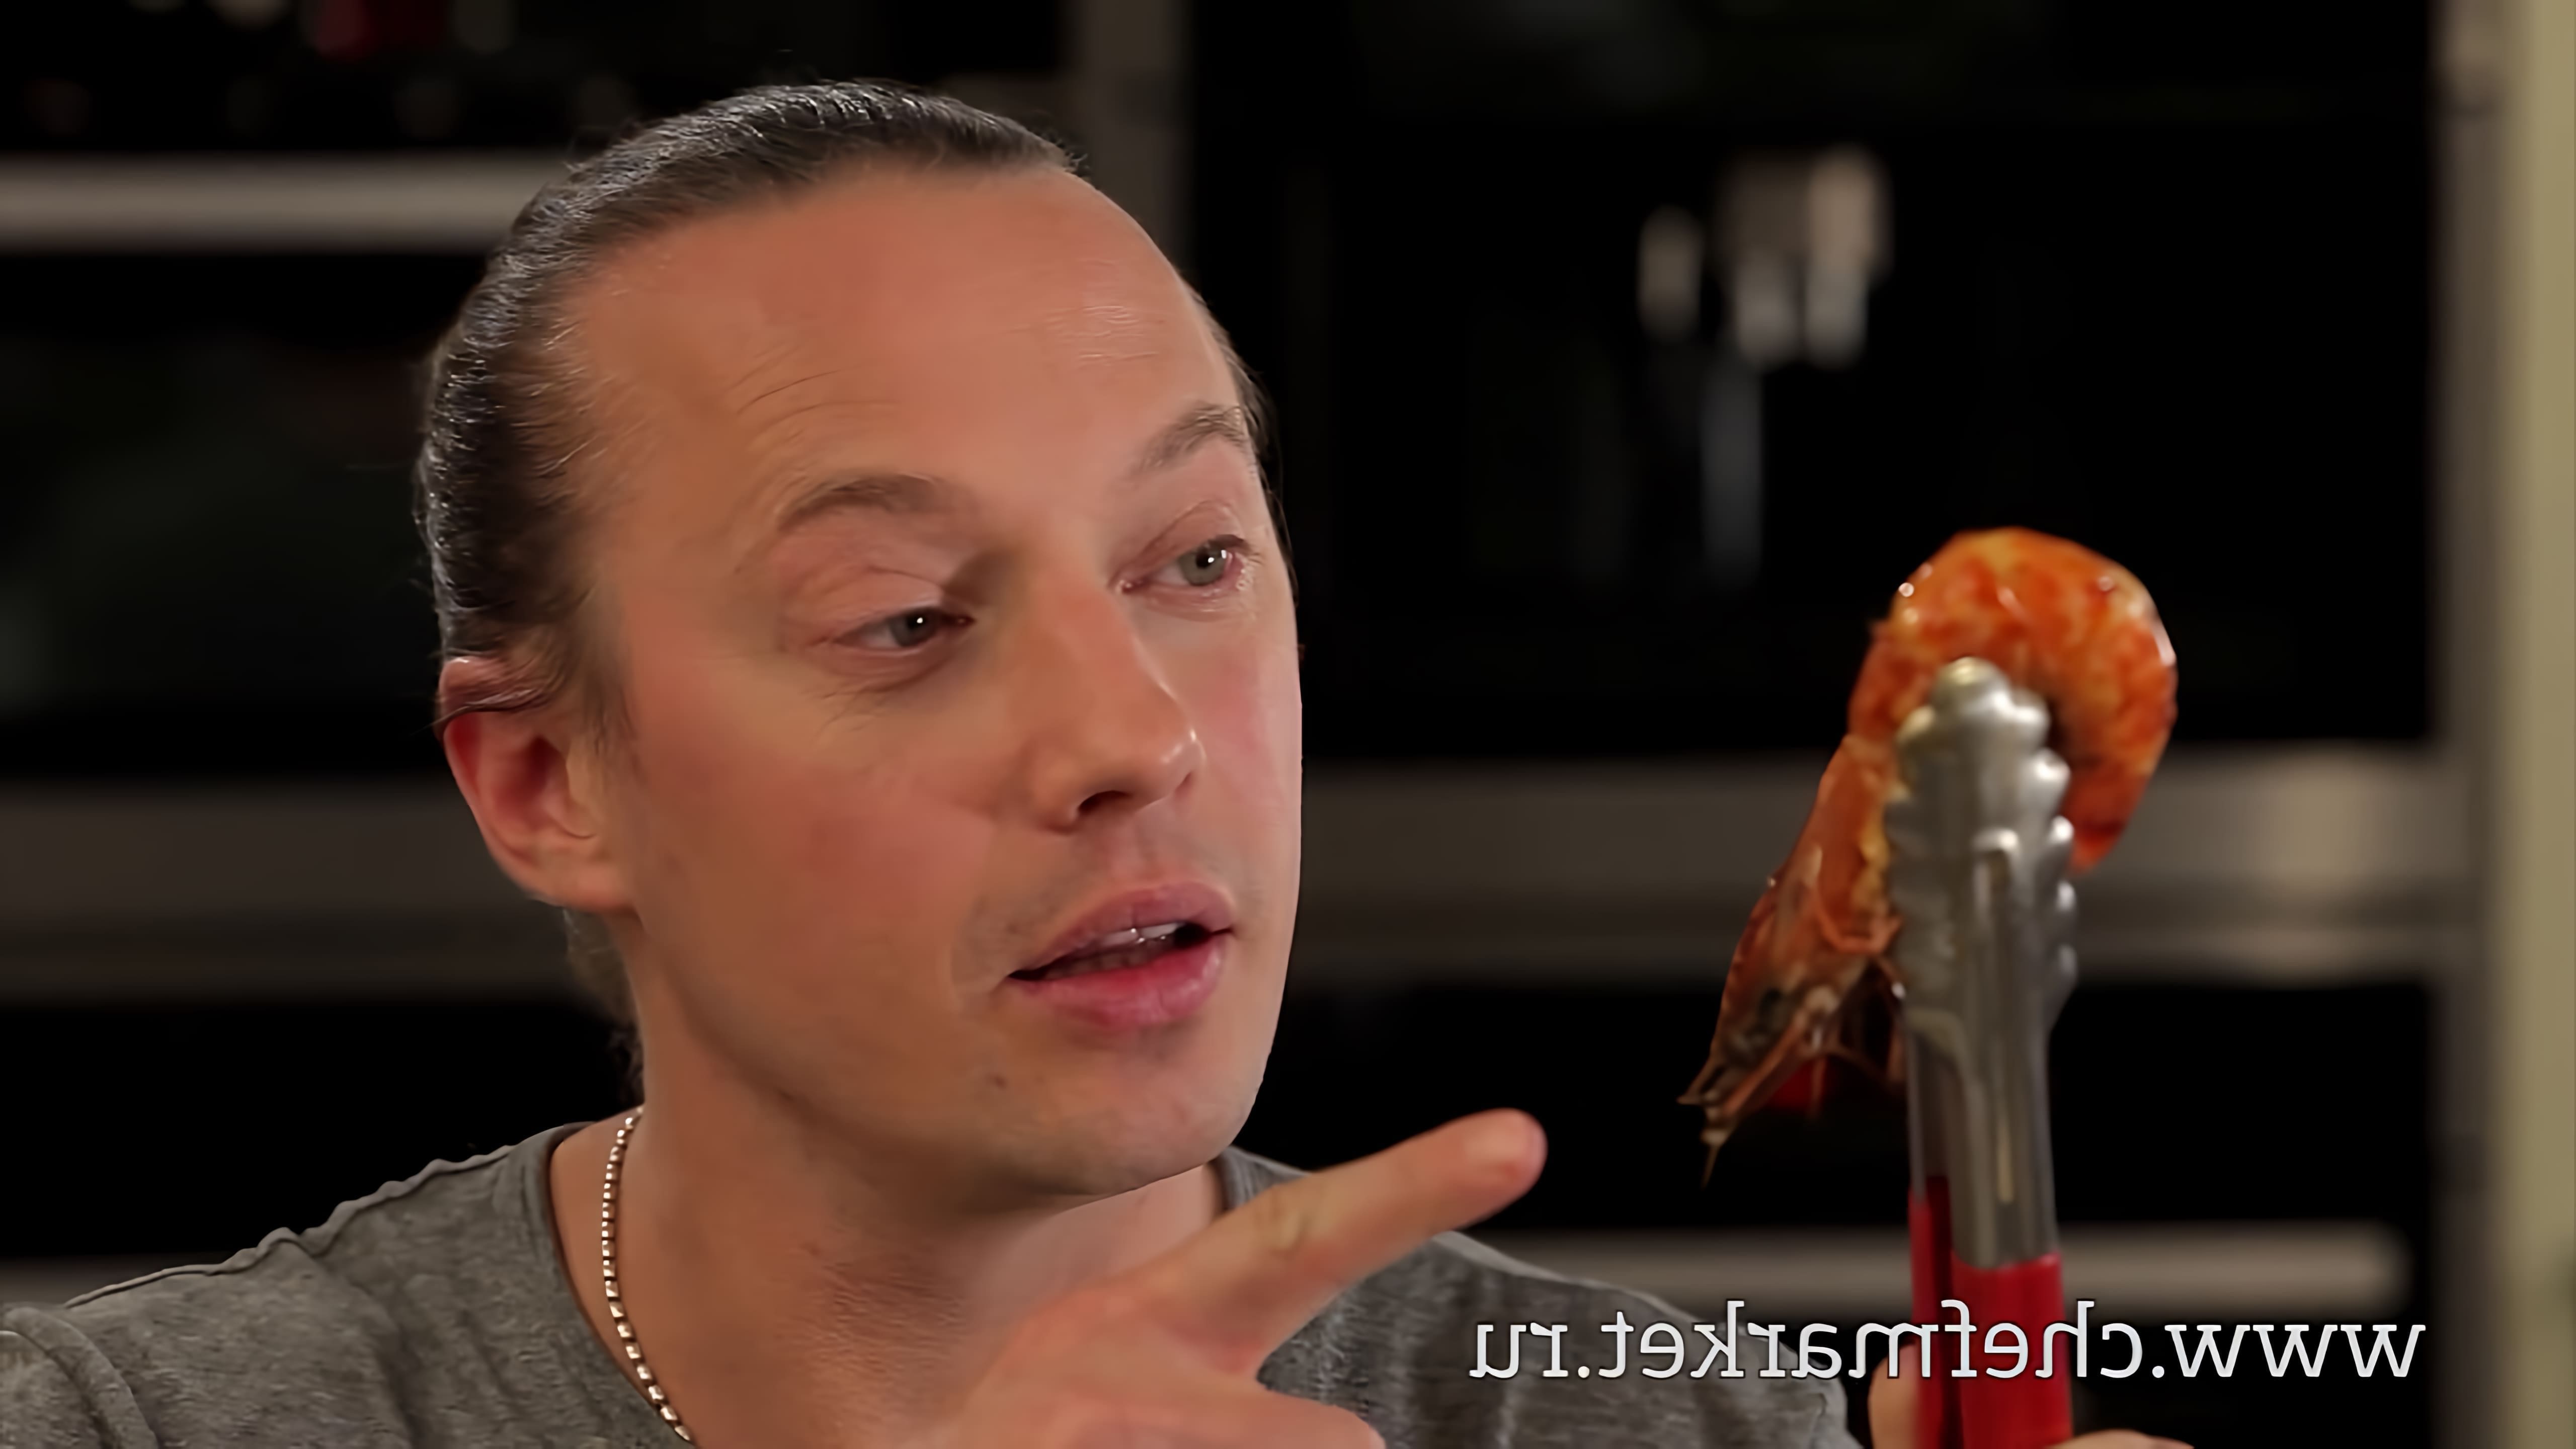 В этом видео рассказывается о том, как правильно выбирать и готовить креветки